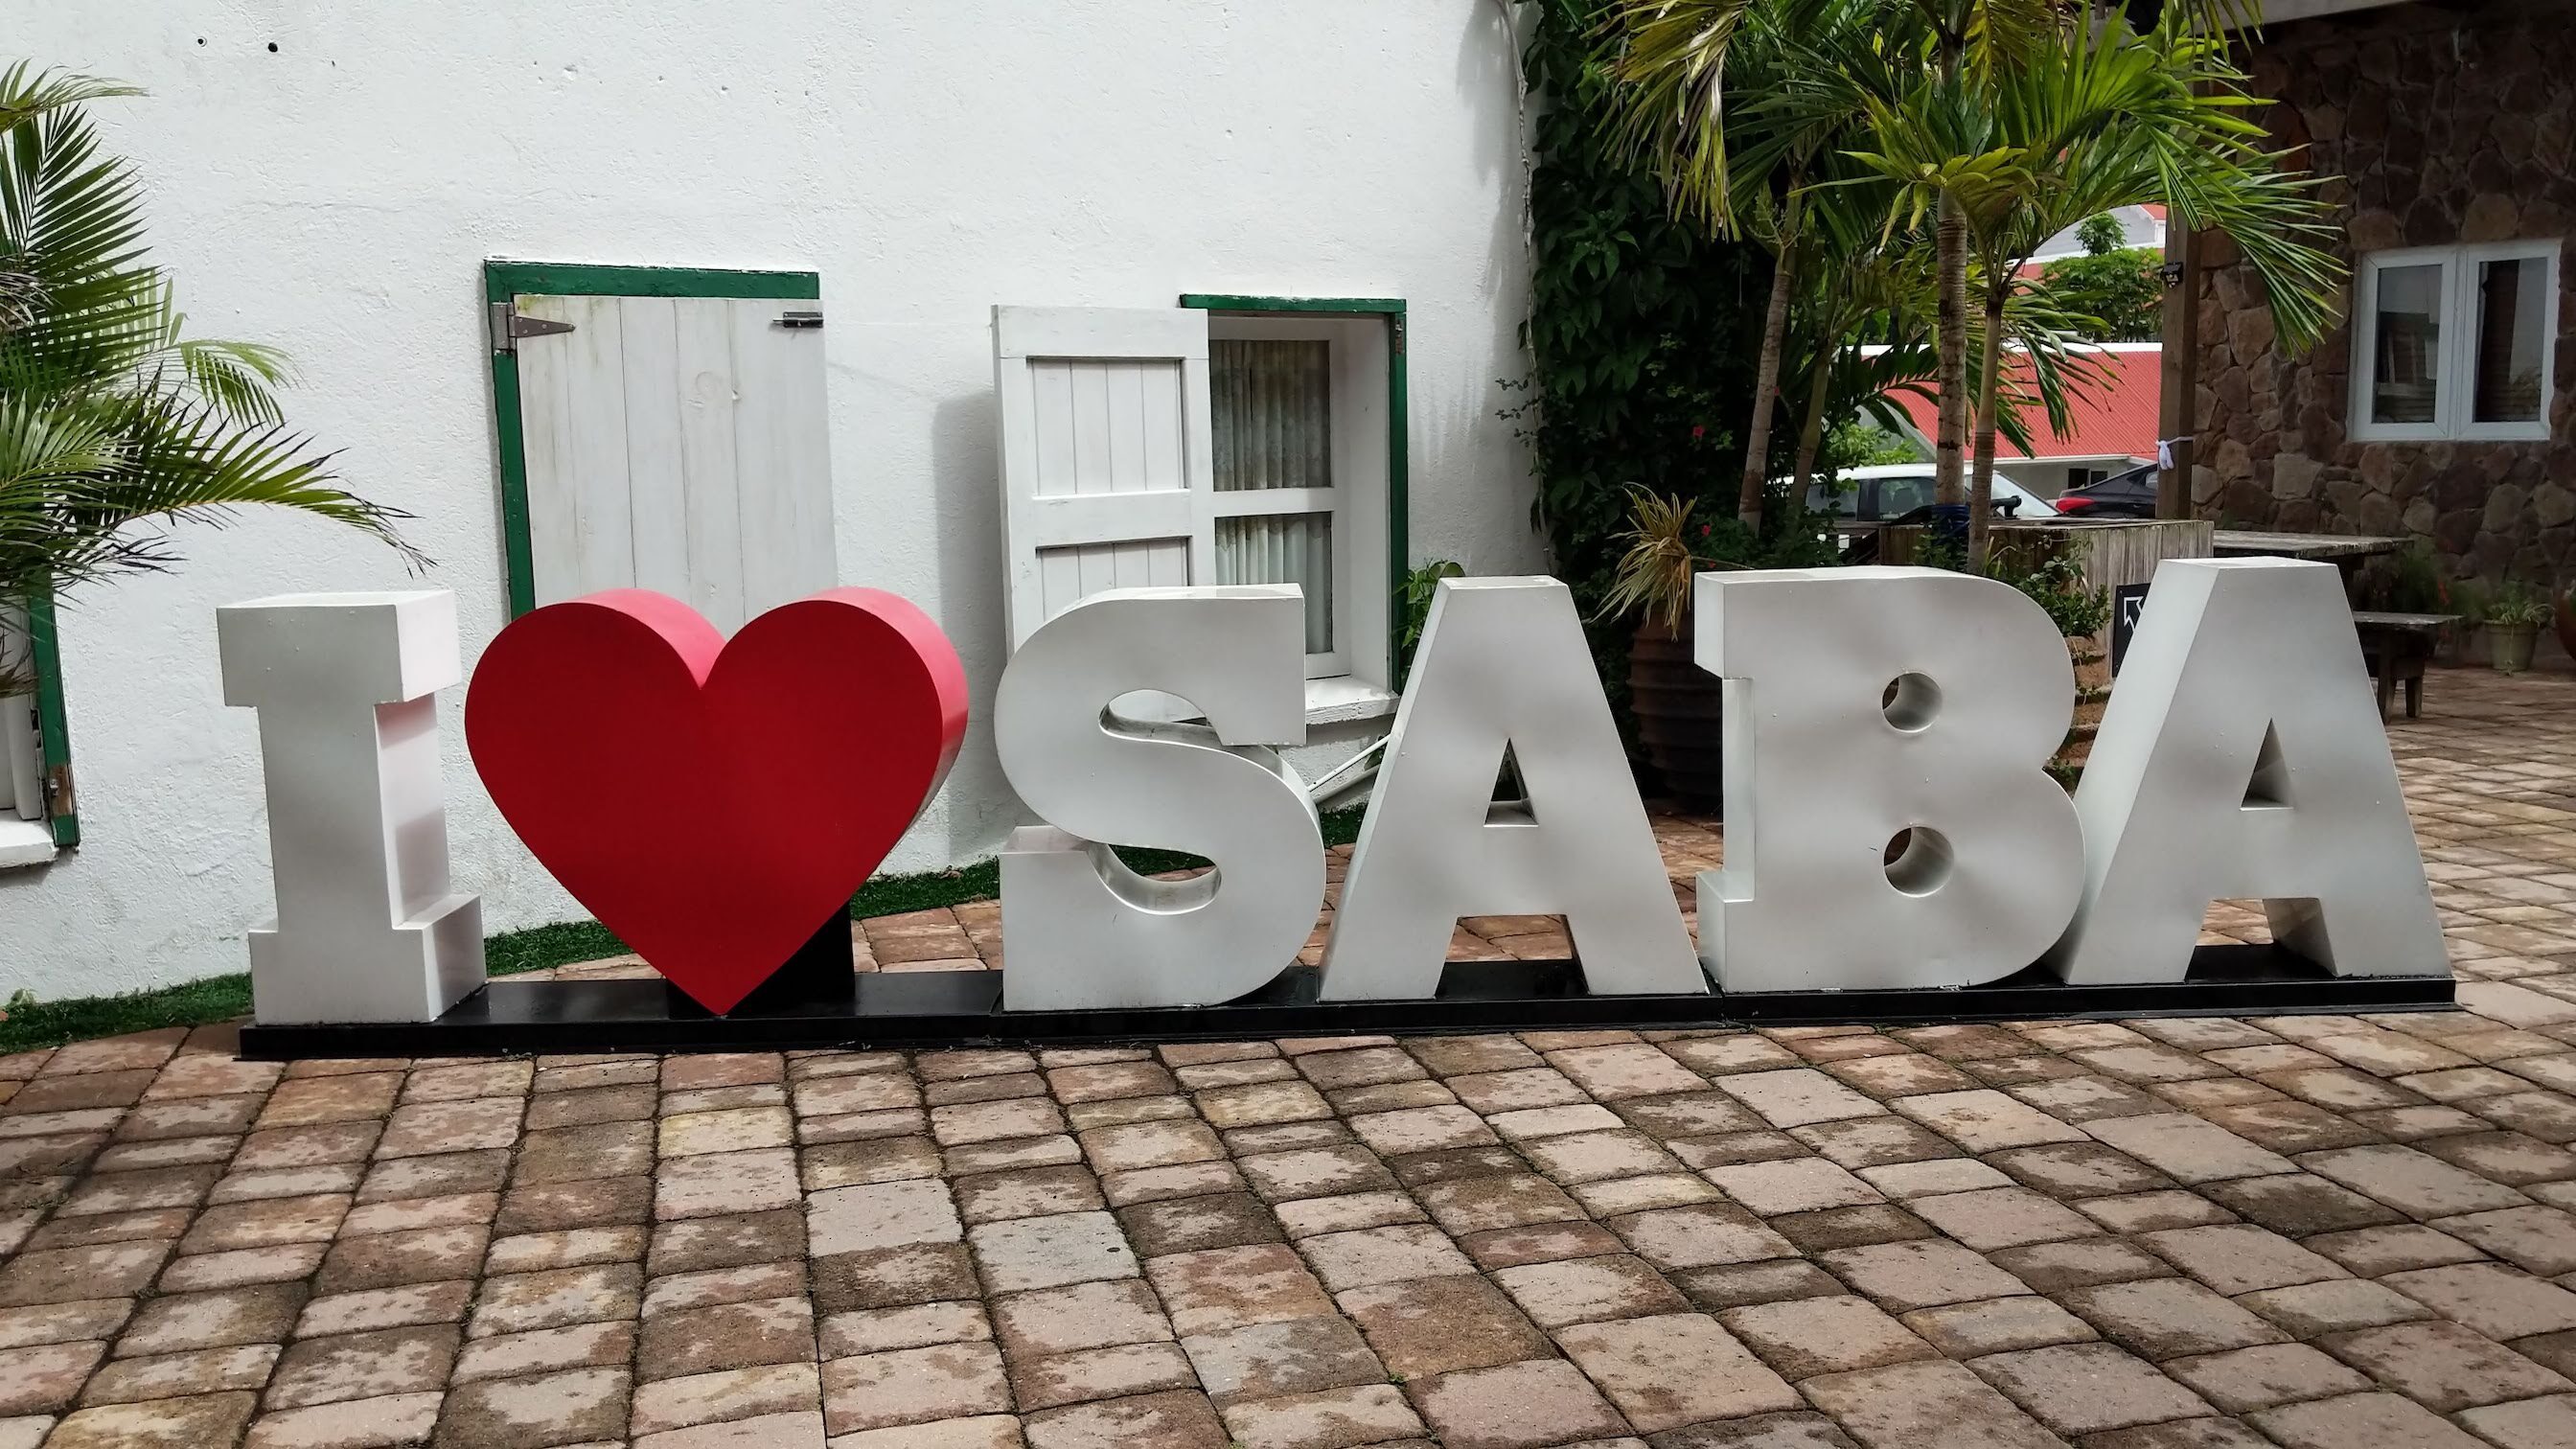 Saba Sign